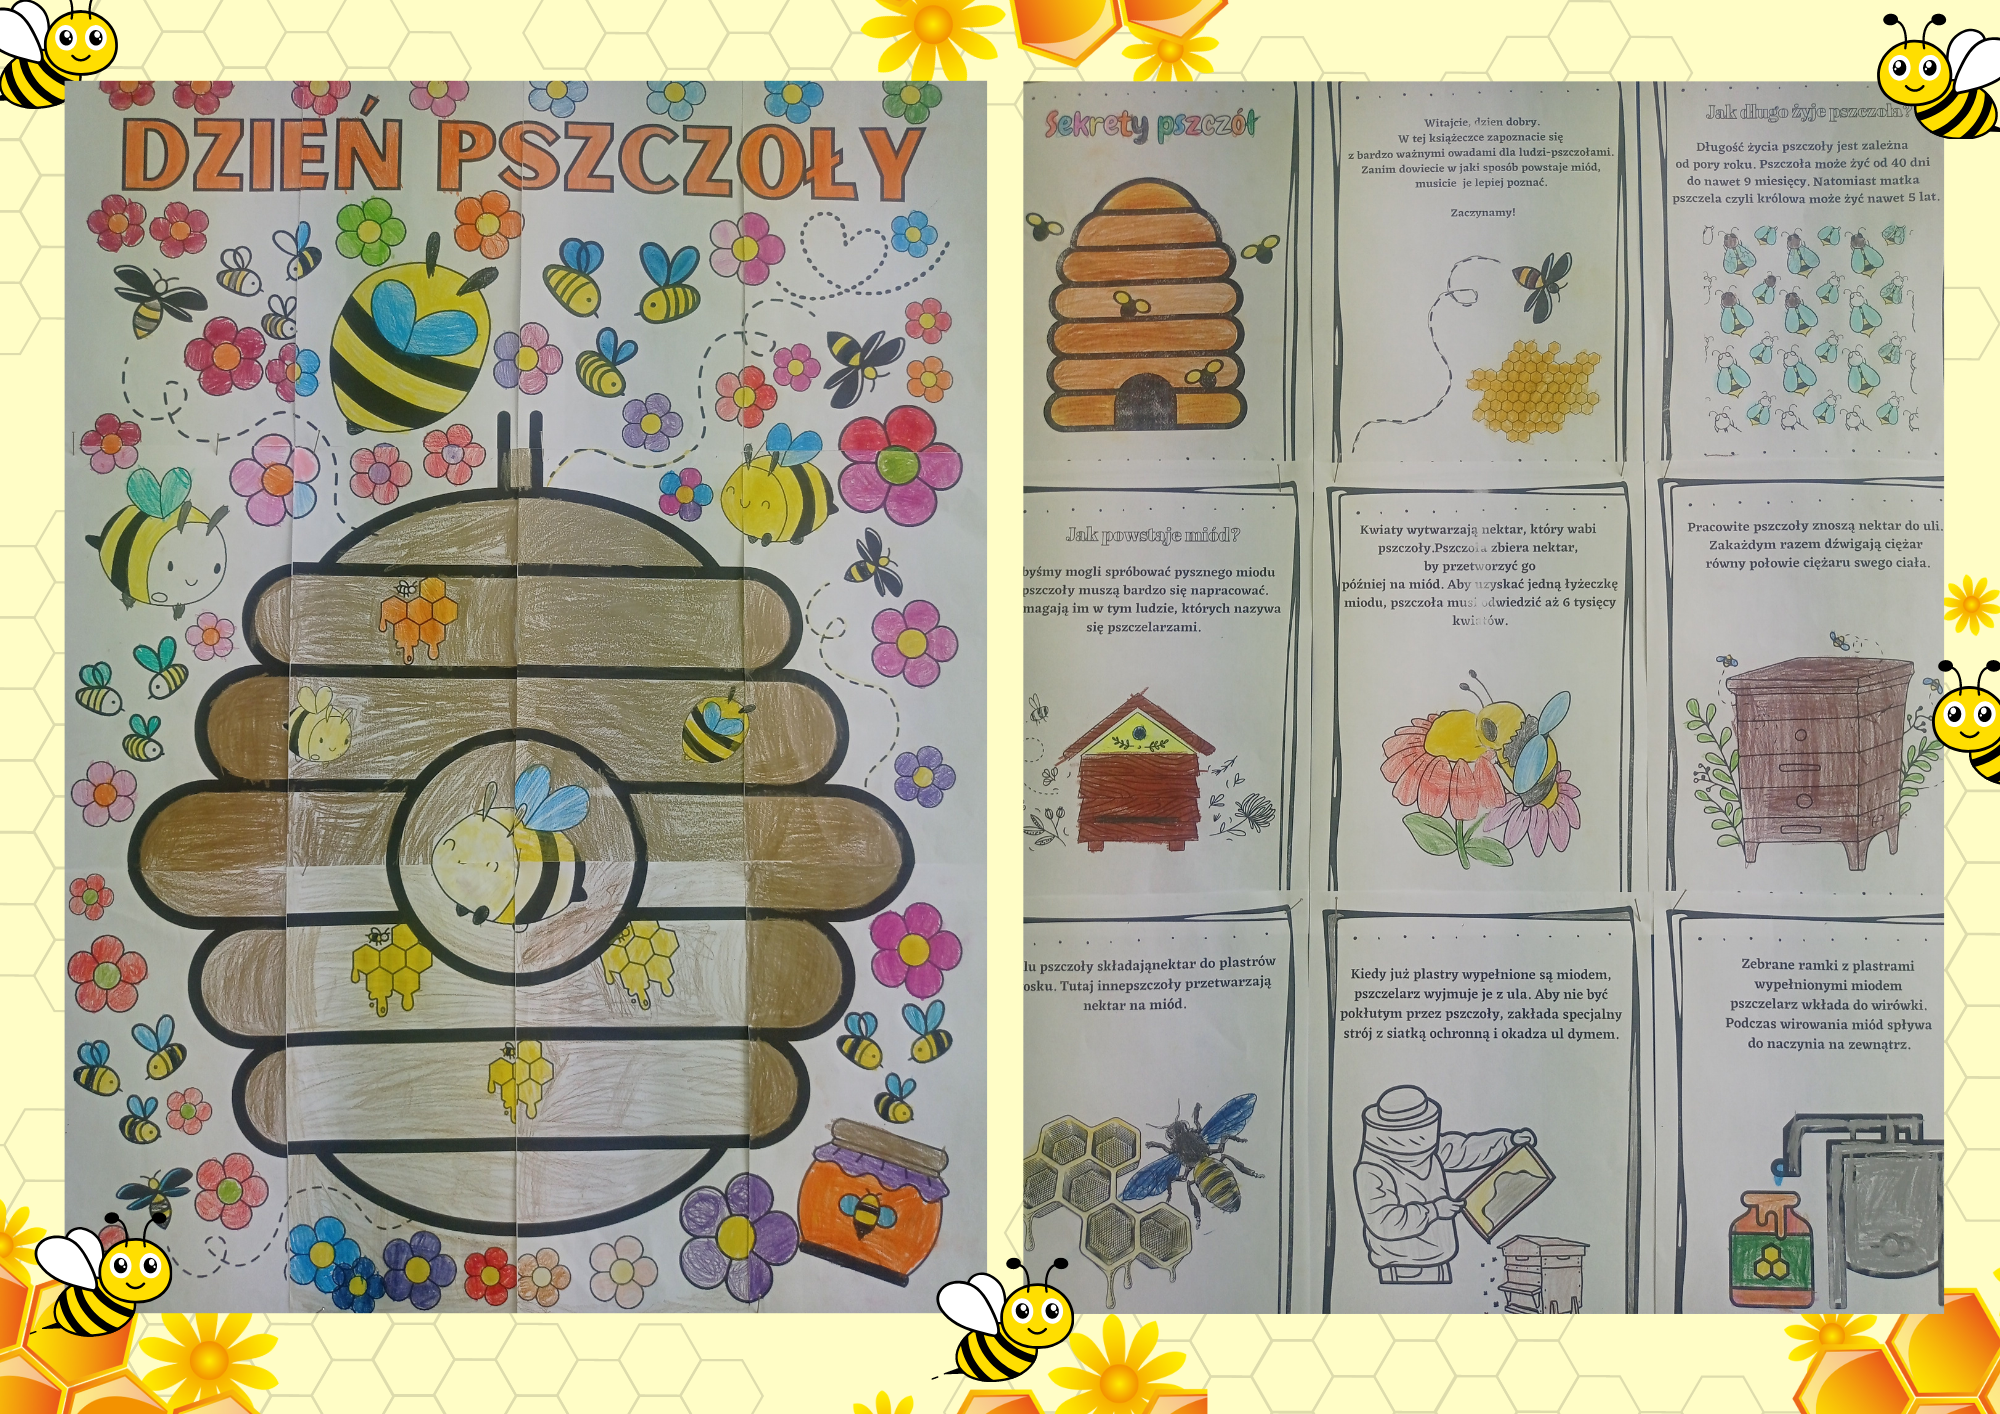 Zdjęcie pomalowanych i złożonych w całość elementów kolorowanki XXL i książeczki o pszczołach.